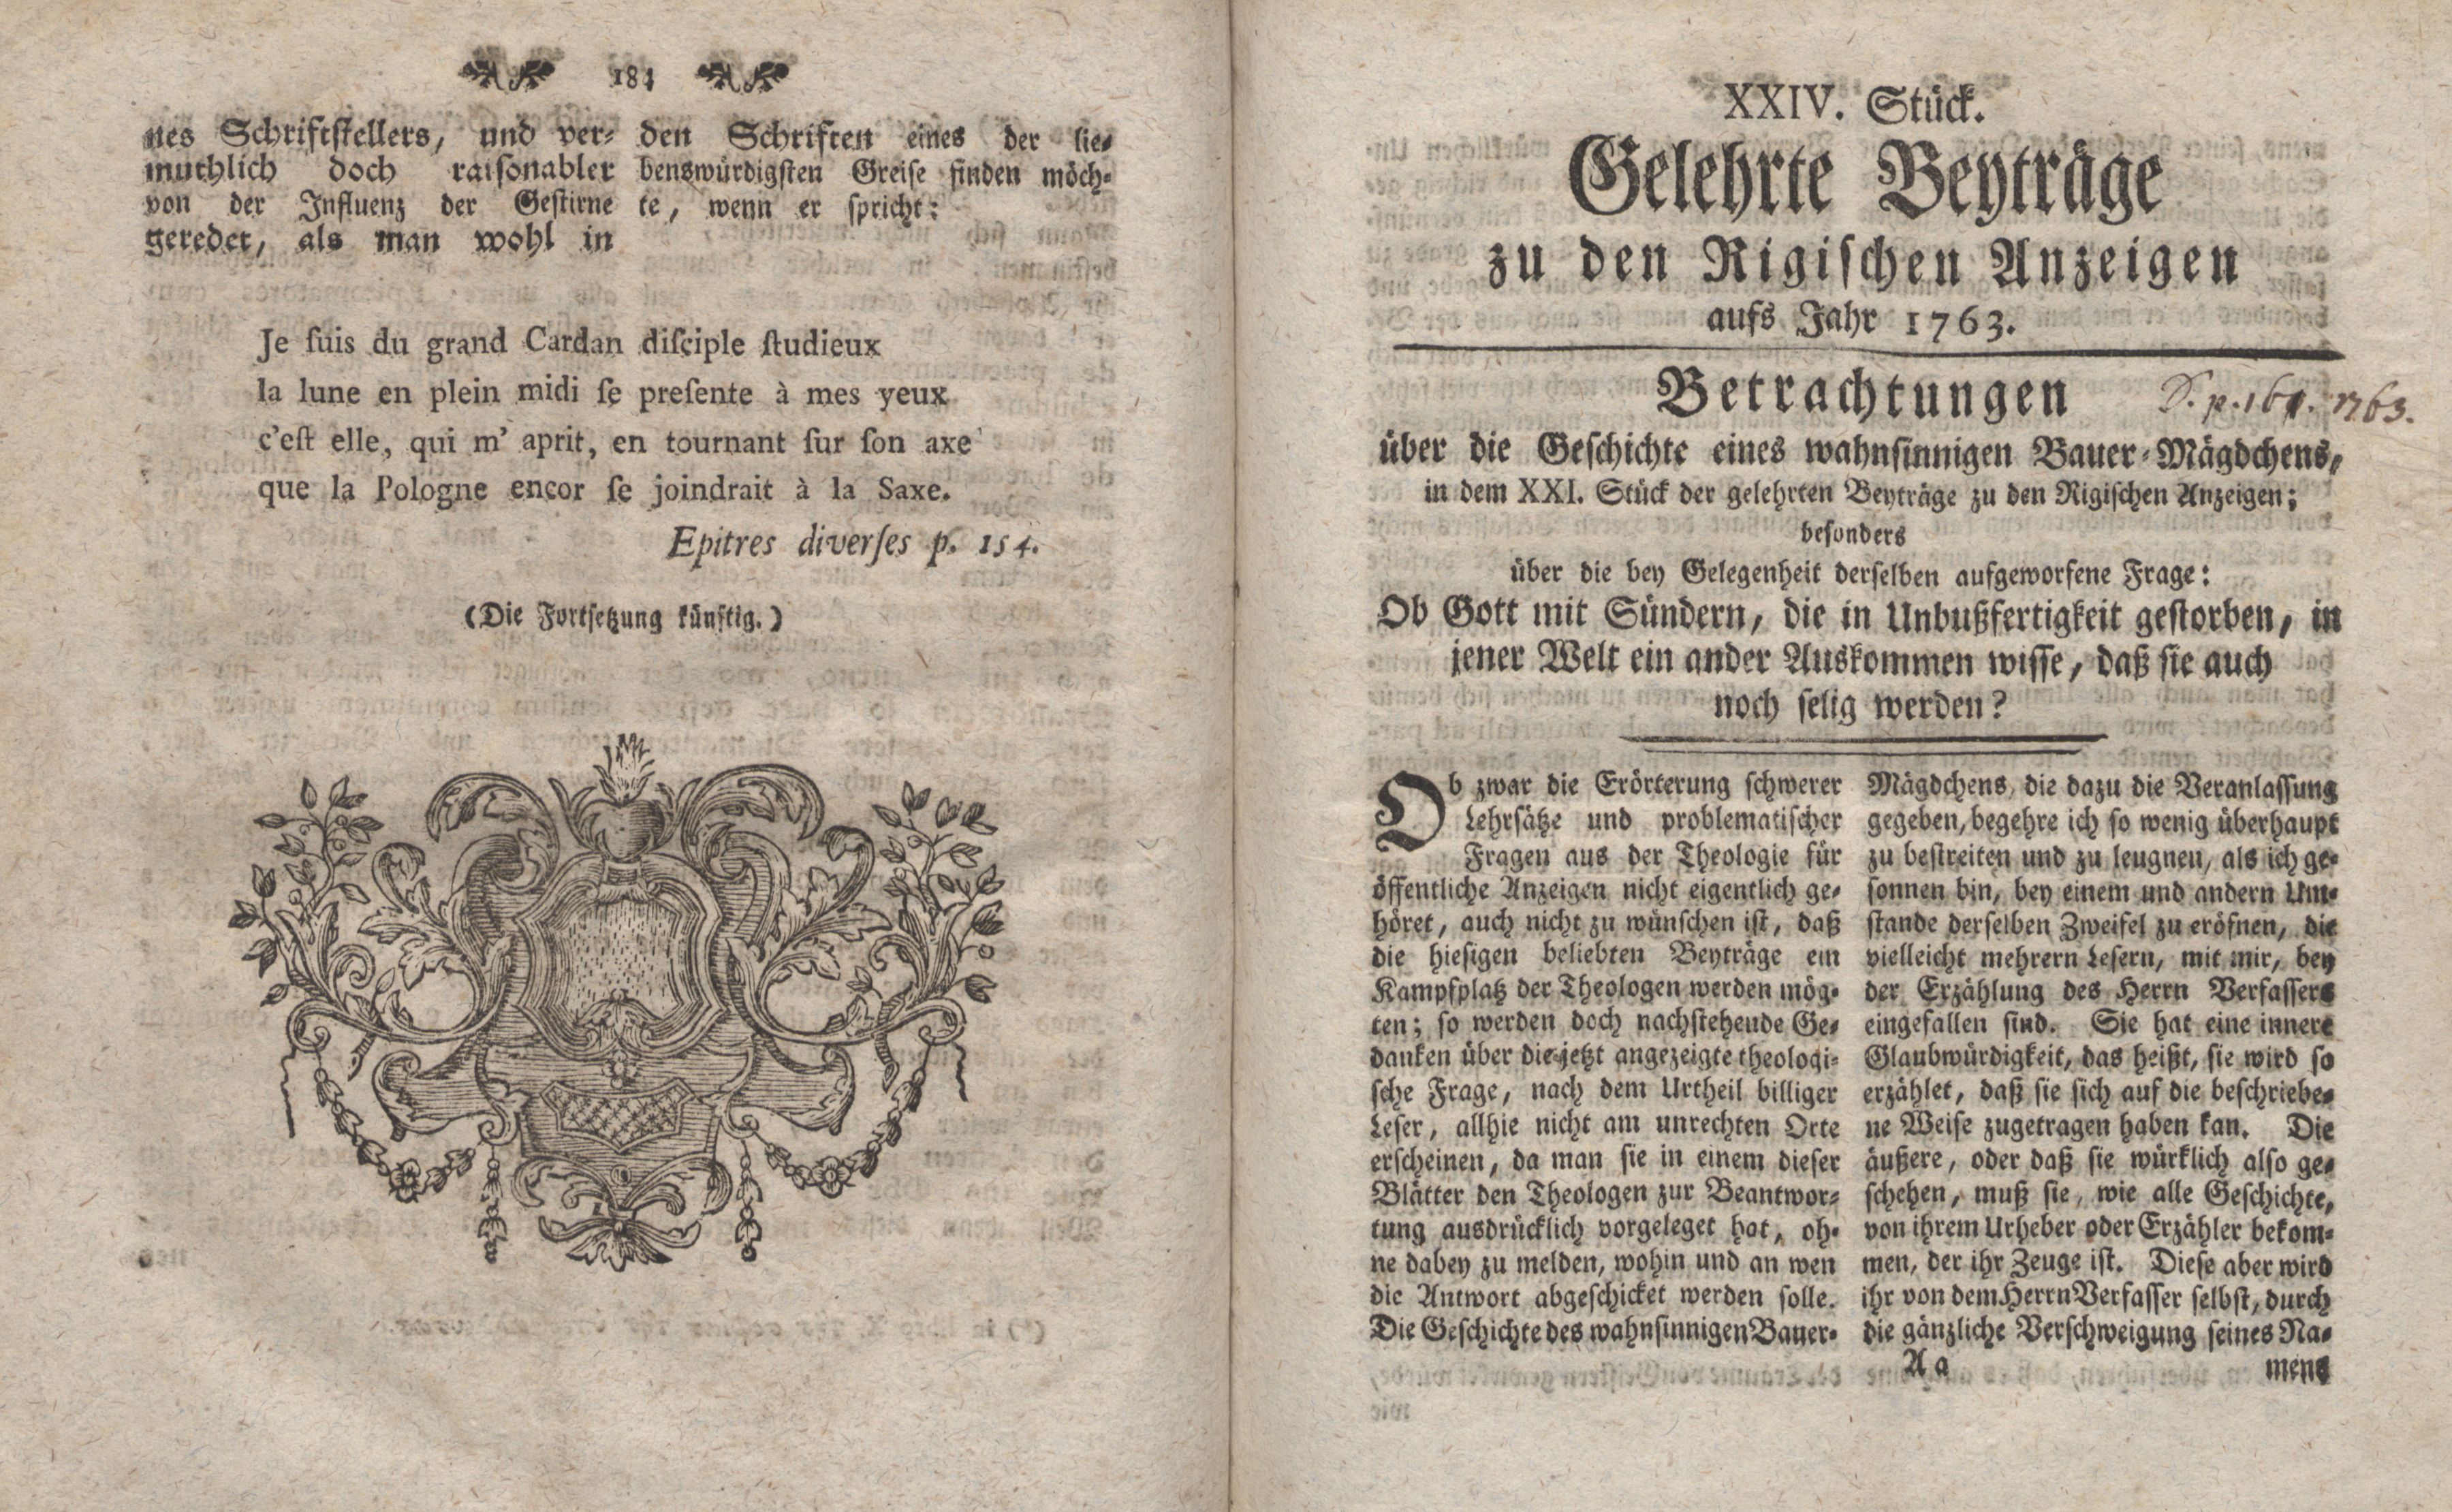 Betrachtungen über die Geschichte eines wahnsinnigen Bauer-Mägdchens [1] (1763) | 1. (184-185) Põhitekst